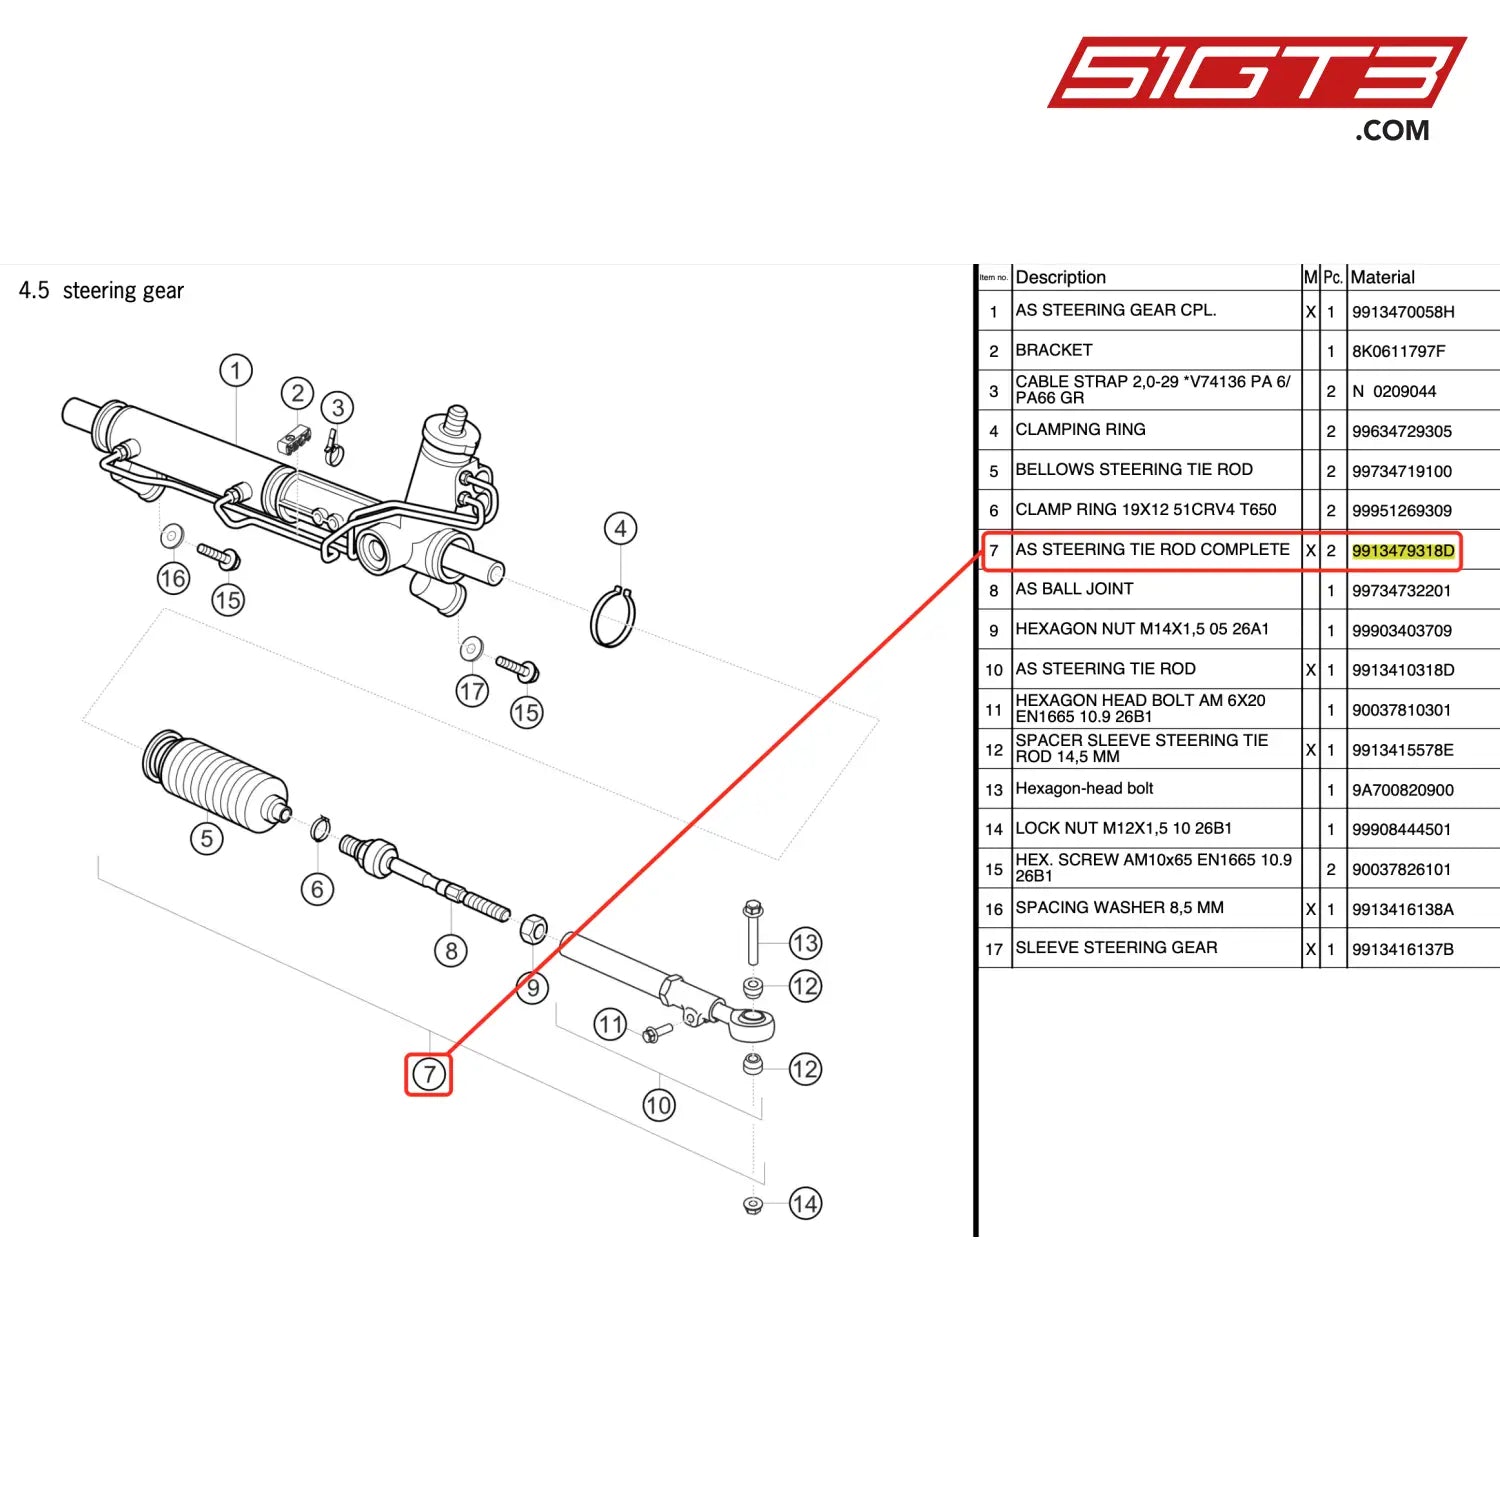 As Steering Tie Rod Complete - 9913479318D [Porsche 911 Gt3 Cup Type 991 (Gen 2)]